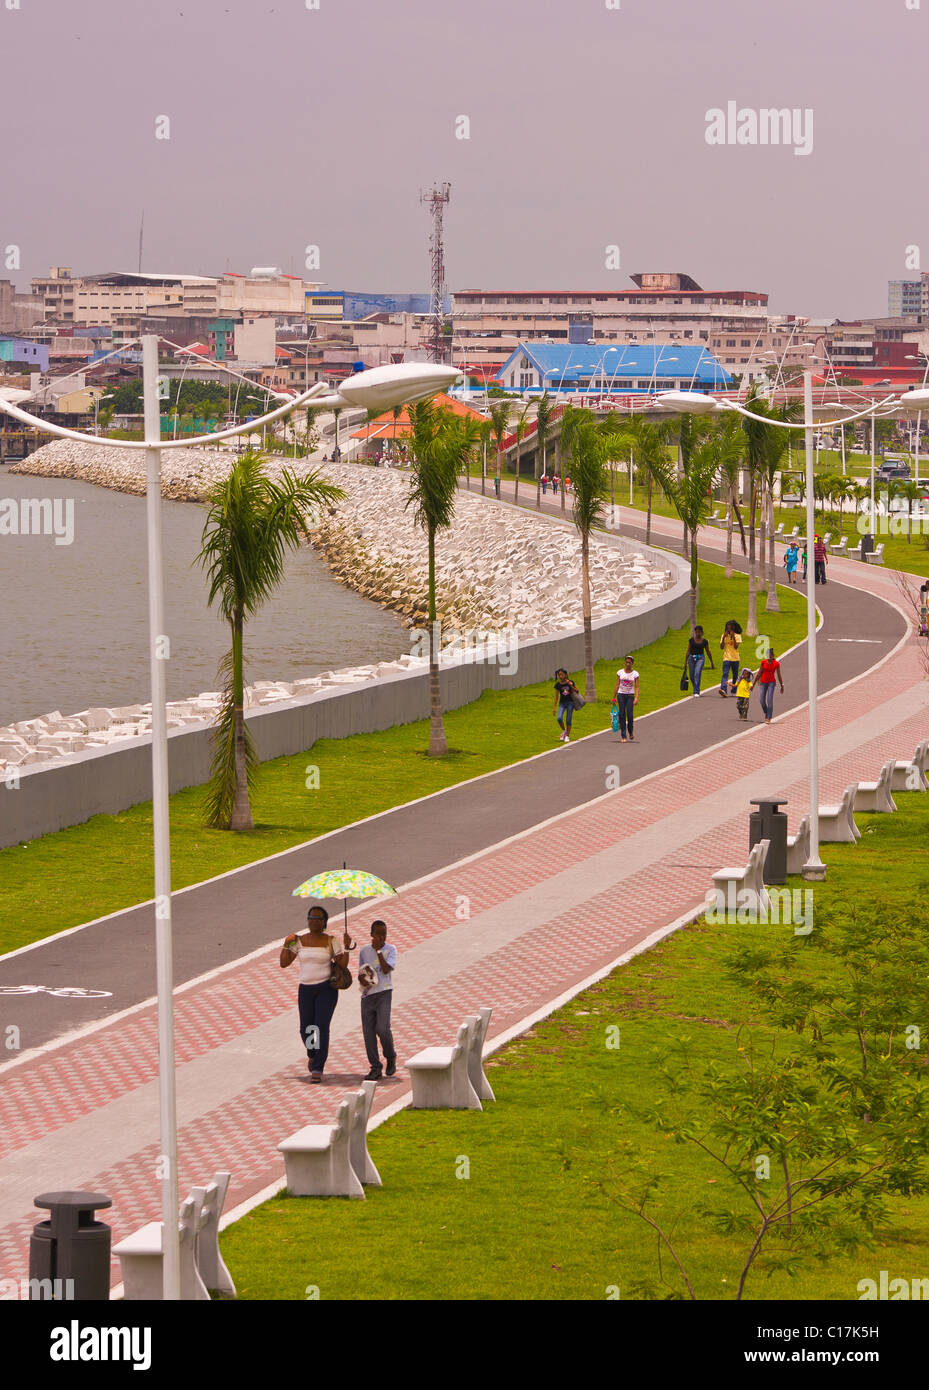 PANAMA CITY, PANAMA - passaggio pedonale in parco Balboa Avenue sulla baia di Panama. Foto Stock